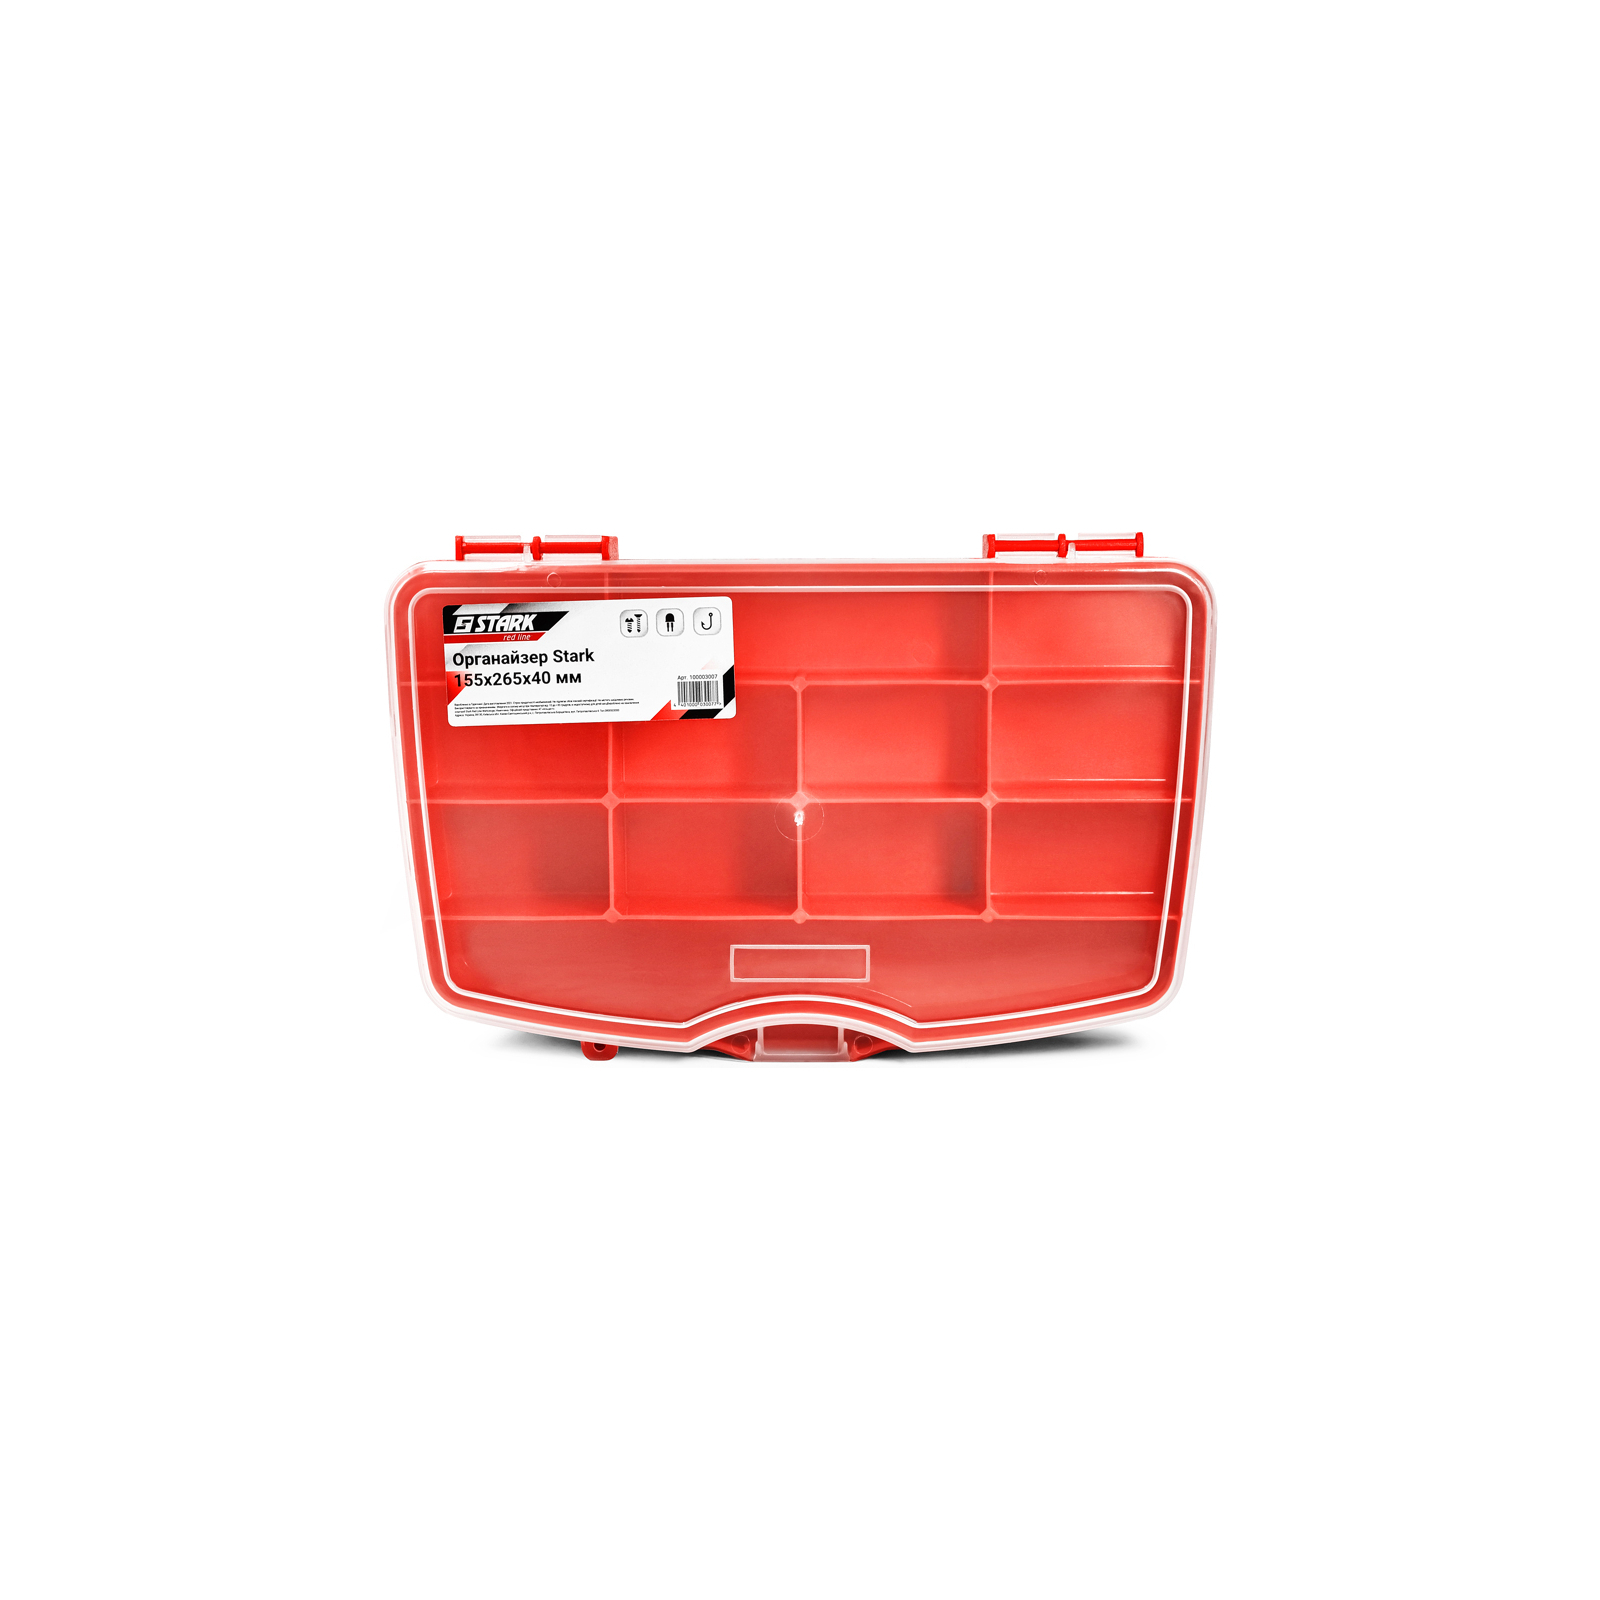 Ящик для инструментов Stark органайзер SmartBox 155x265x40 мм (100003007)